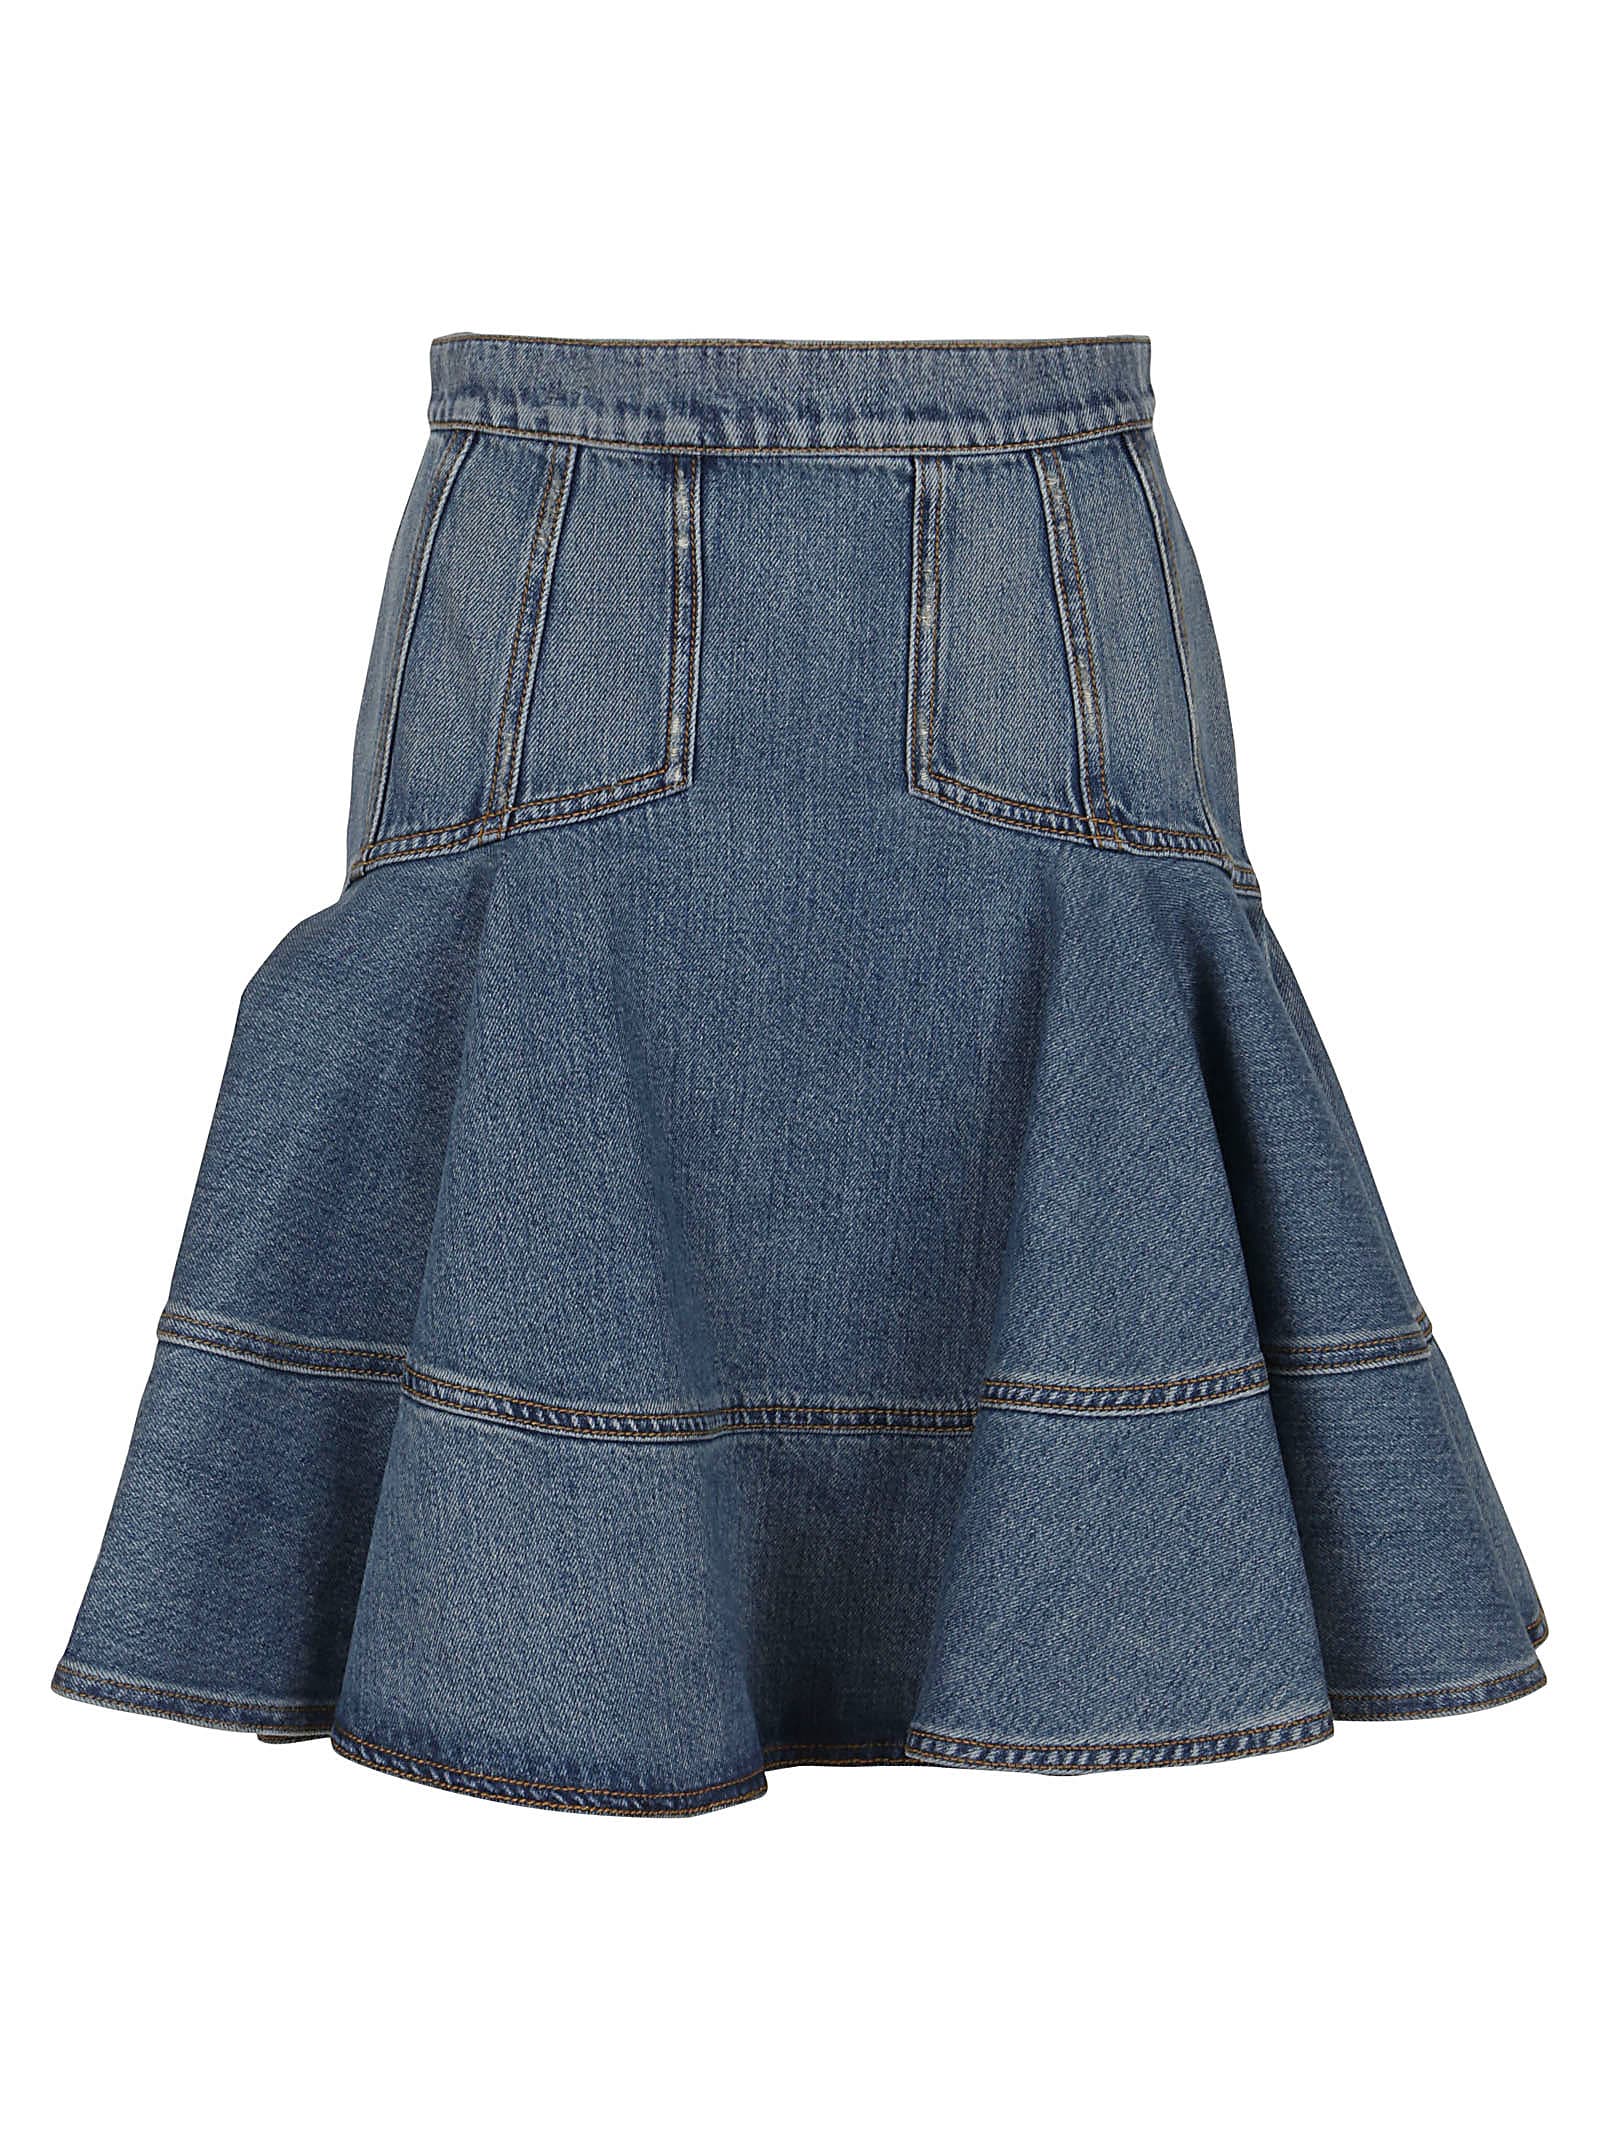 Alexander Mcqueen Mini Skirt In Denim In Indigo Washed